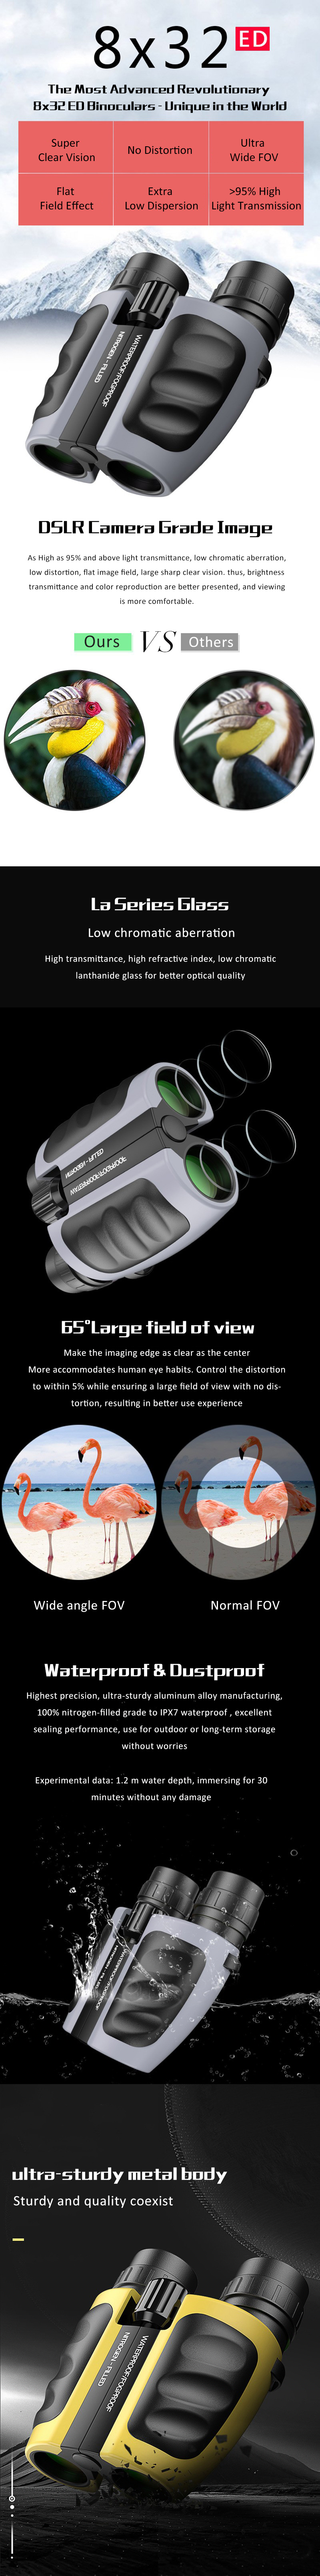 8x32 binoculars.jpg